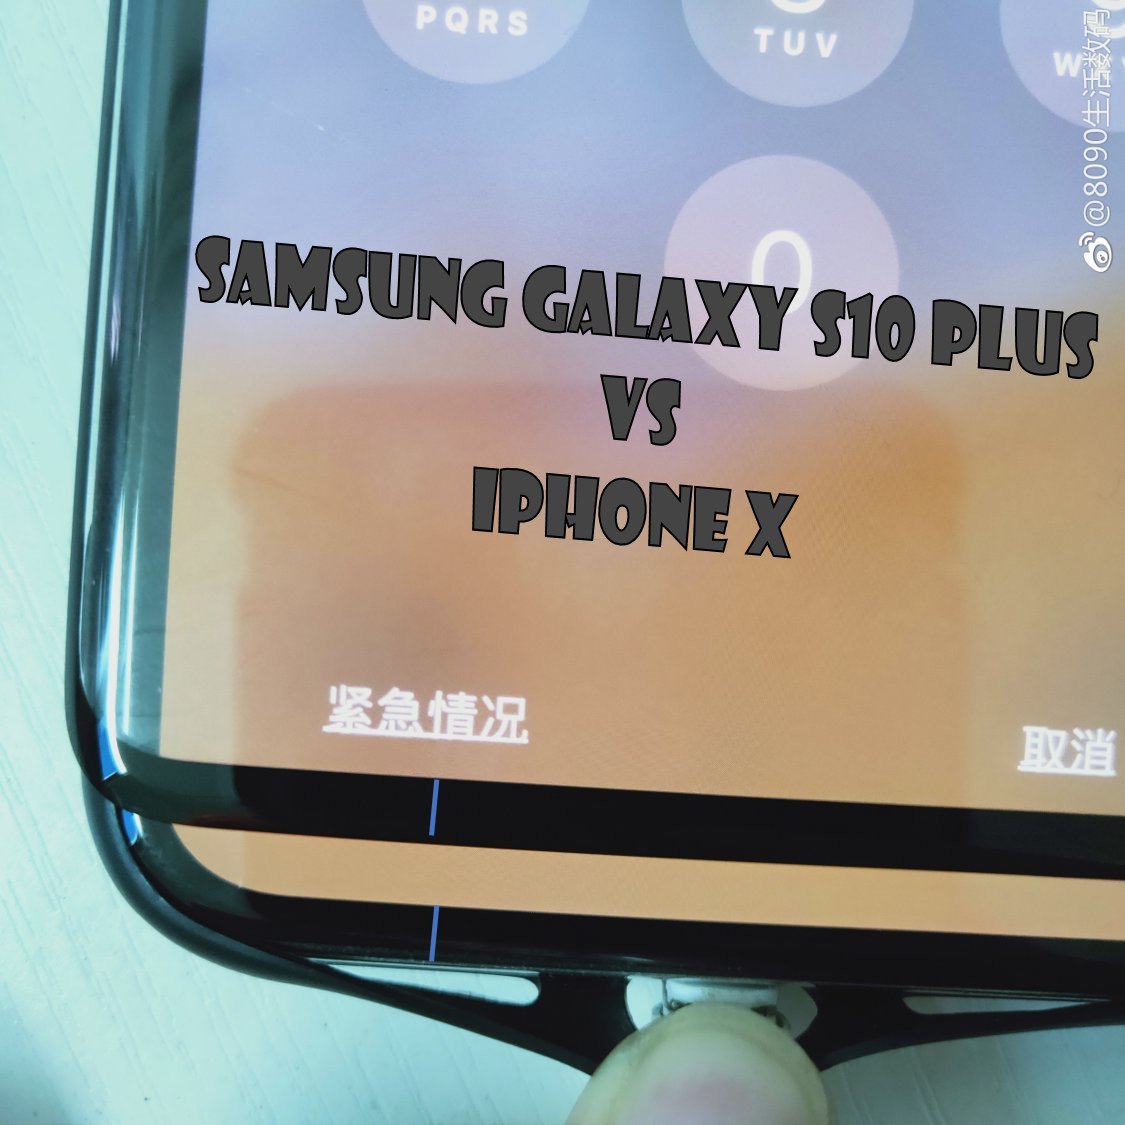 Vazamento da tampa da tela confirma que o Samsung Galaxy S10 Plus tem um queixo pequeno e fofo